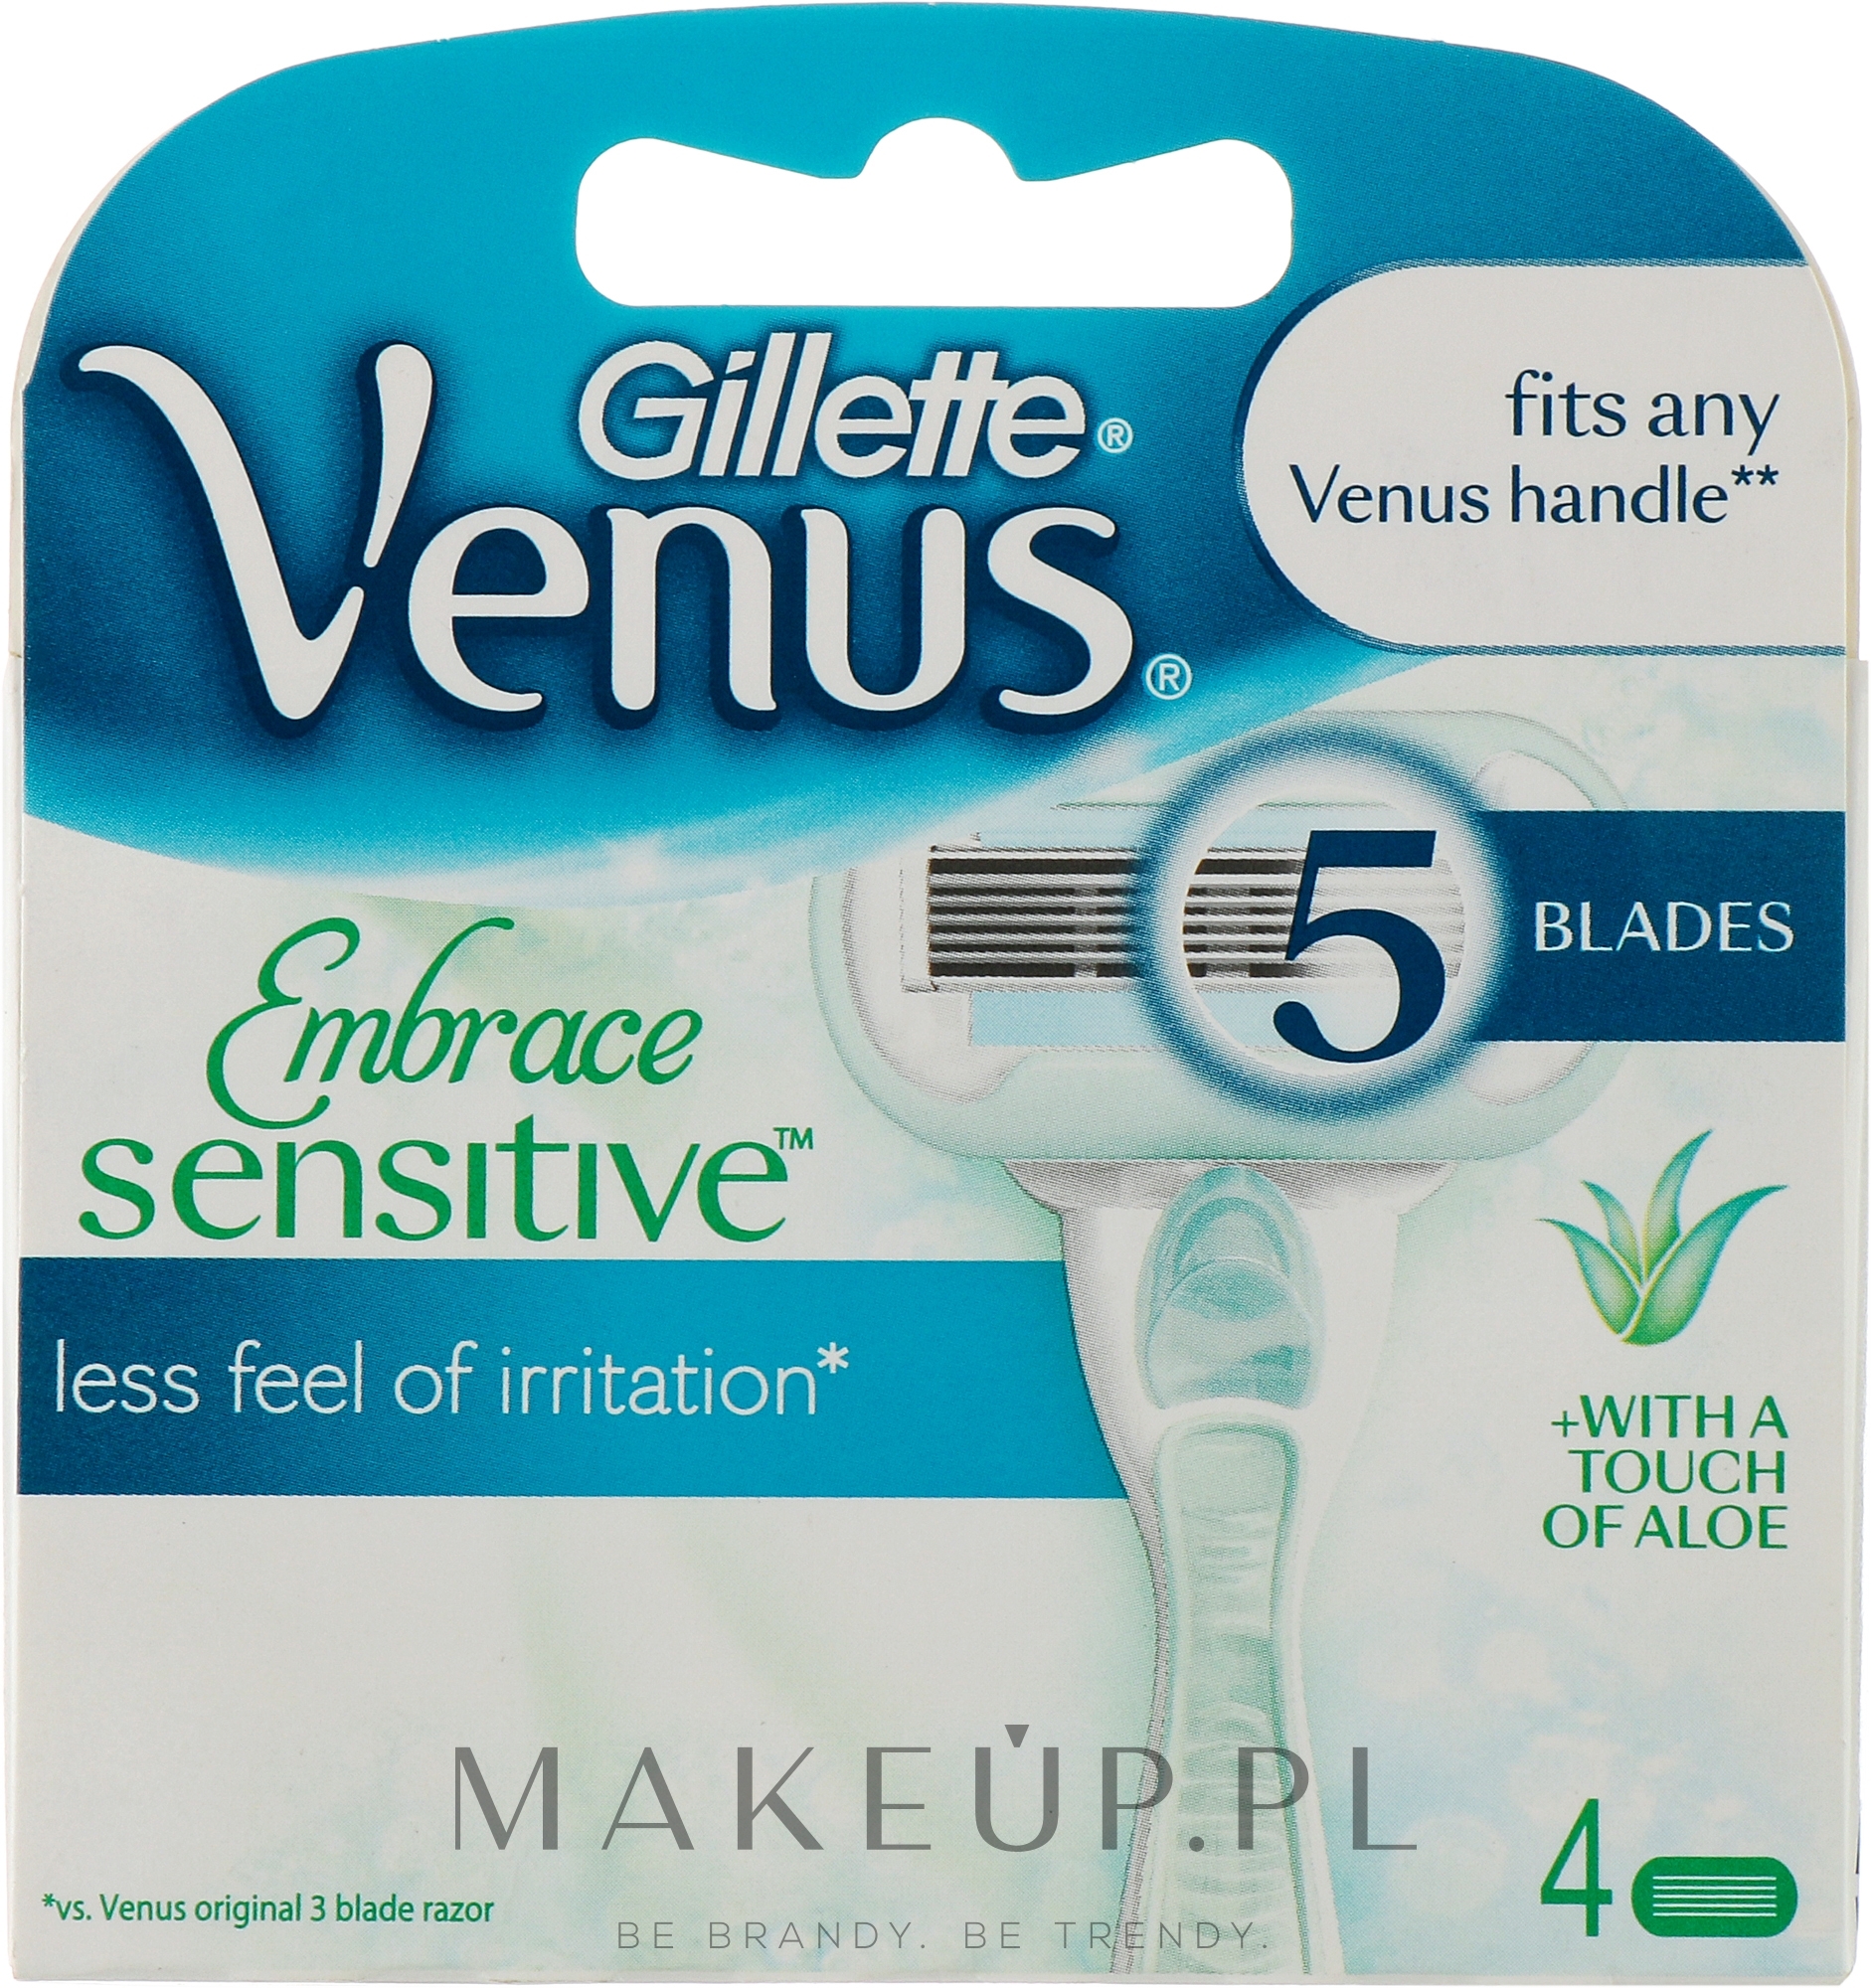 Wymienne wkłady do maszynki, 4 szt. - Gillette Venus Embrace Sensitive — Zdjęcie 4 szt.